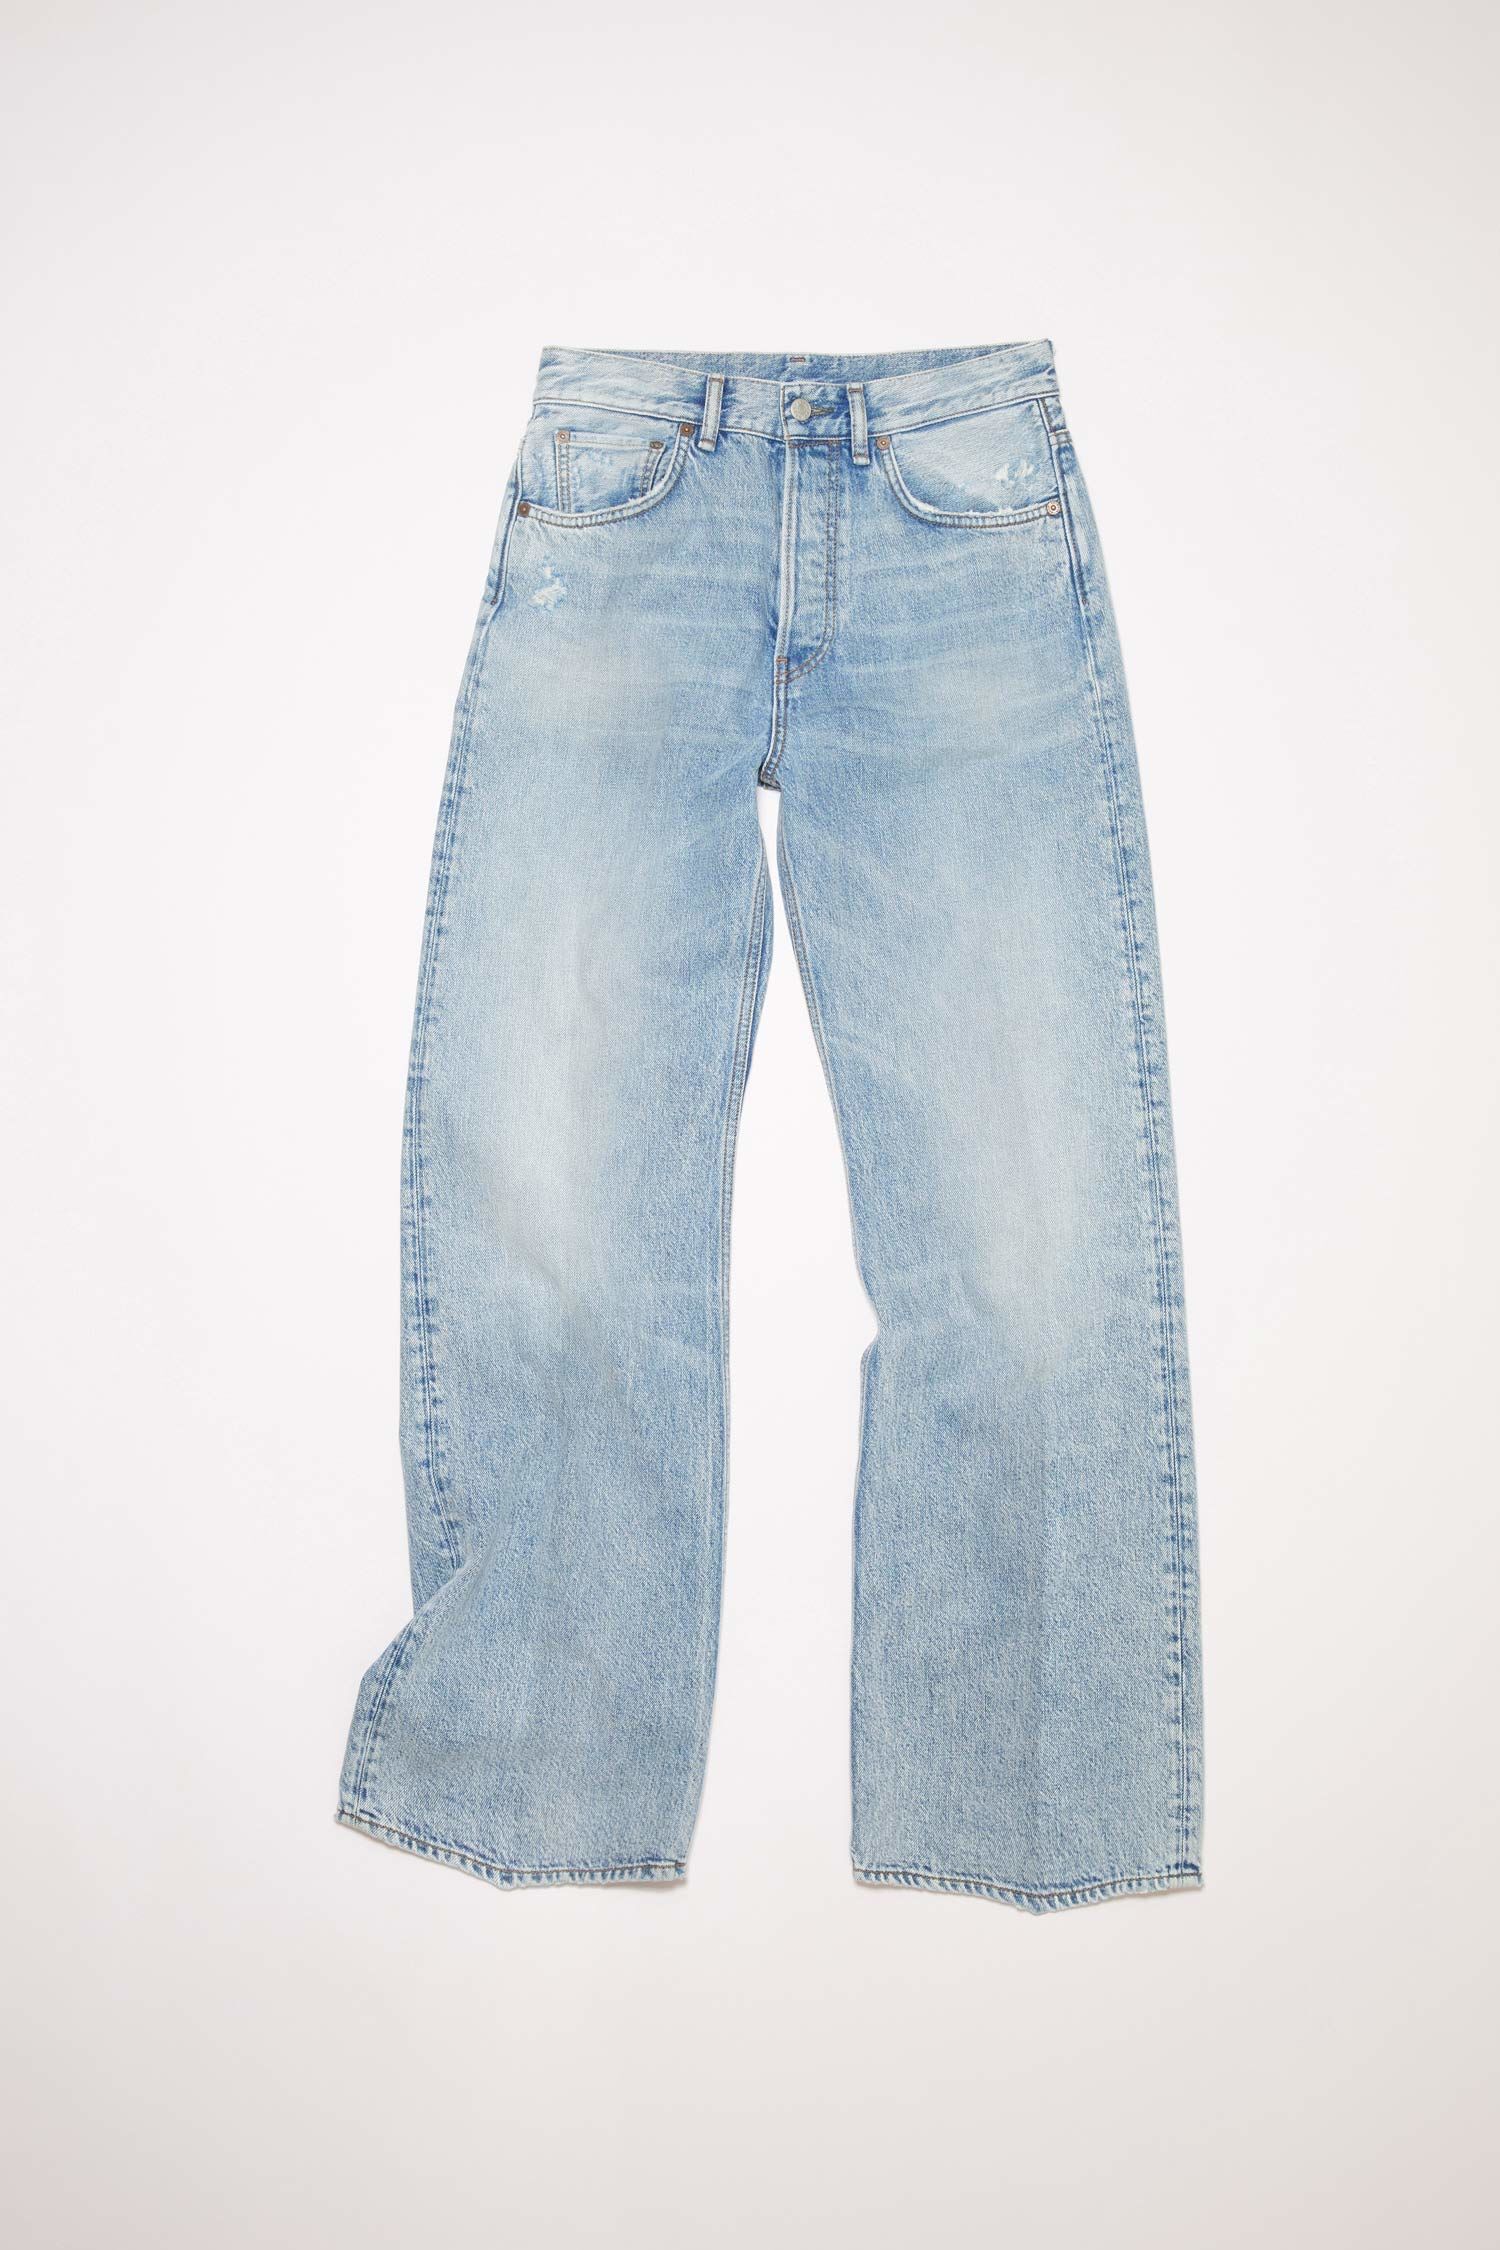 ファッション通販】 1989acne studios jeans デニム/ジーンズ アクネ